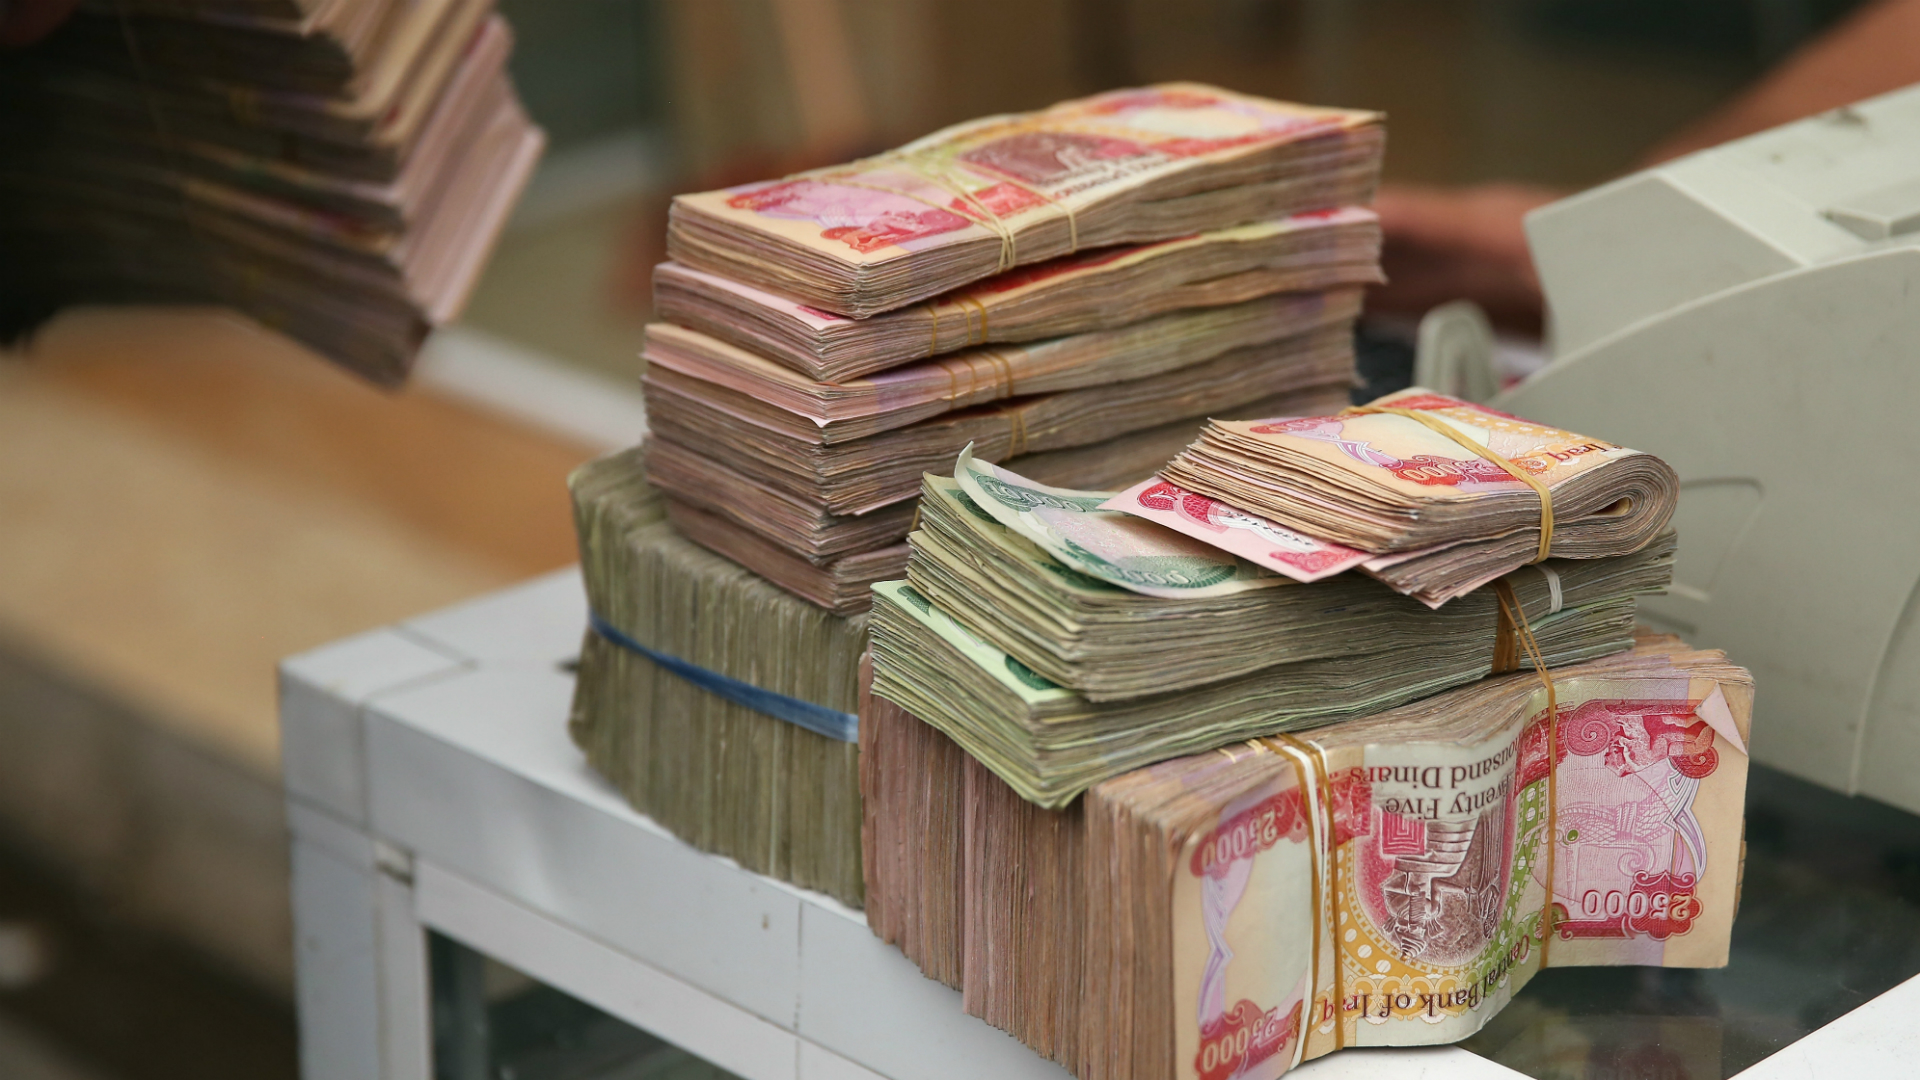 Ιράκ: Περισσότερα από 650 εκατομμύρια ευρώ υπεξαιρέθηκαν από δημόσιες τράπεζες